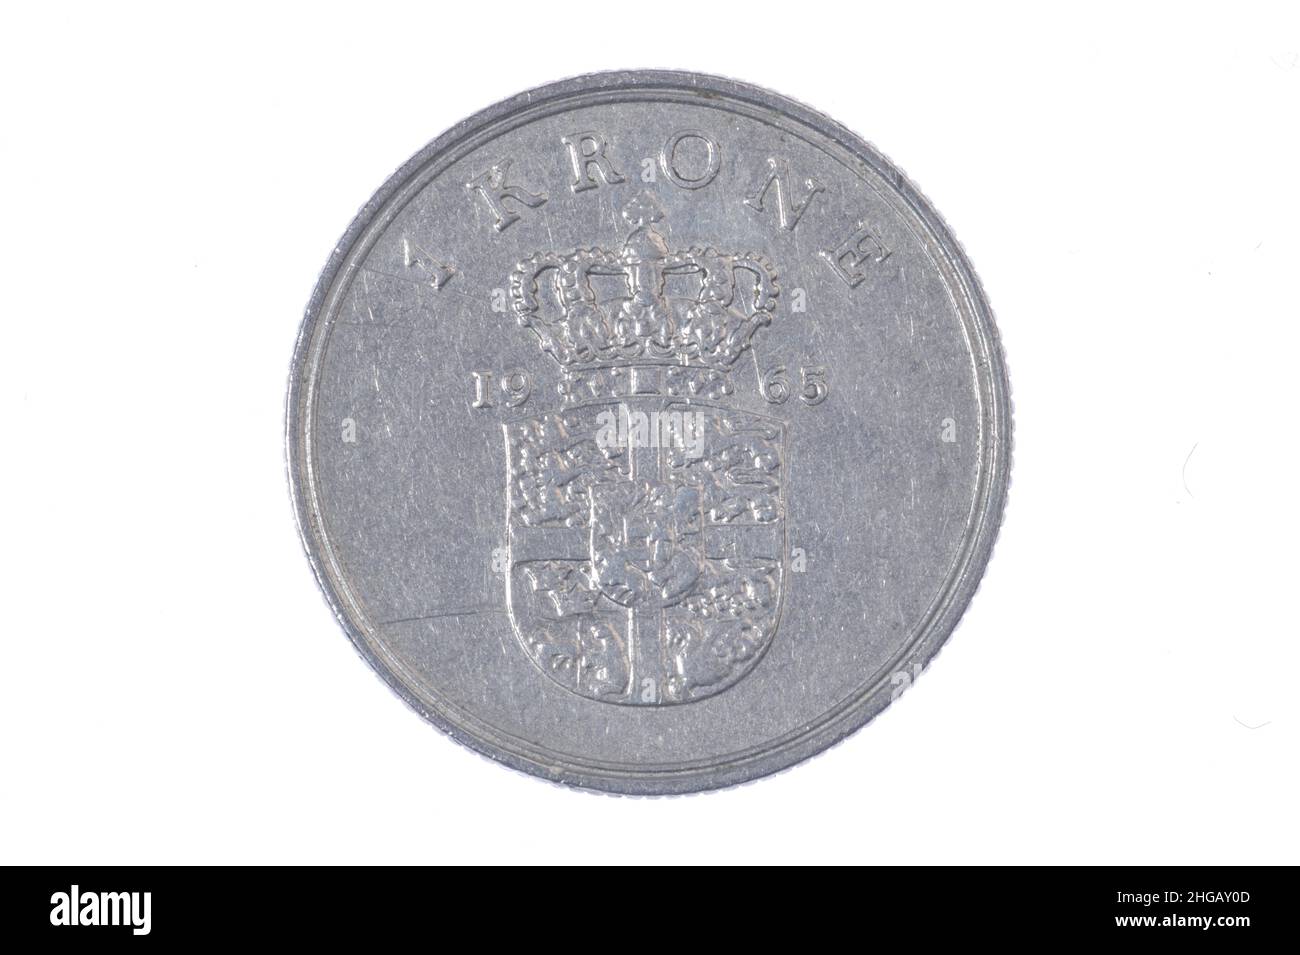 Coin, 1 krone, Denmark Stock Photo